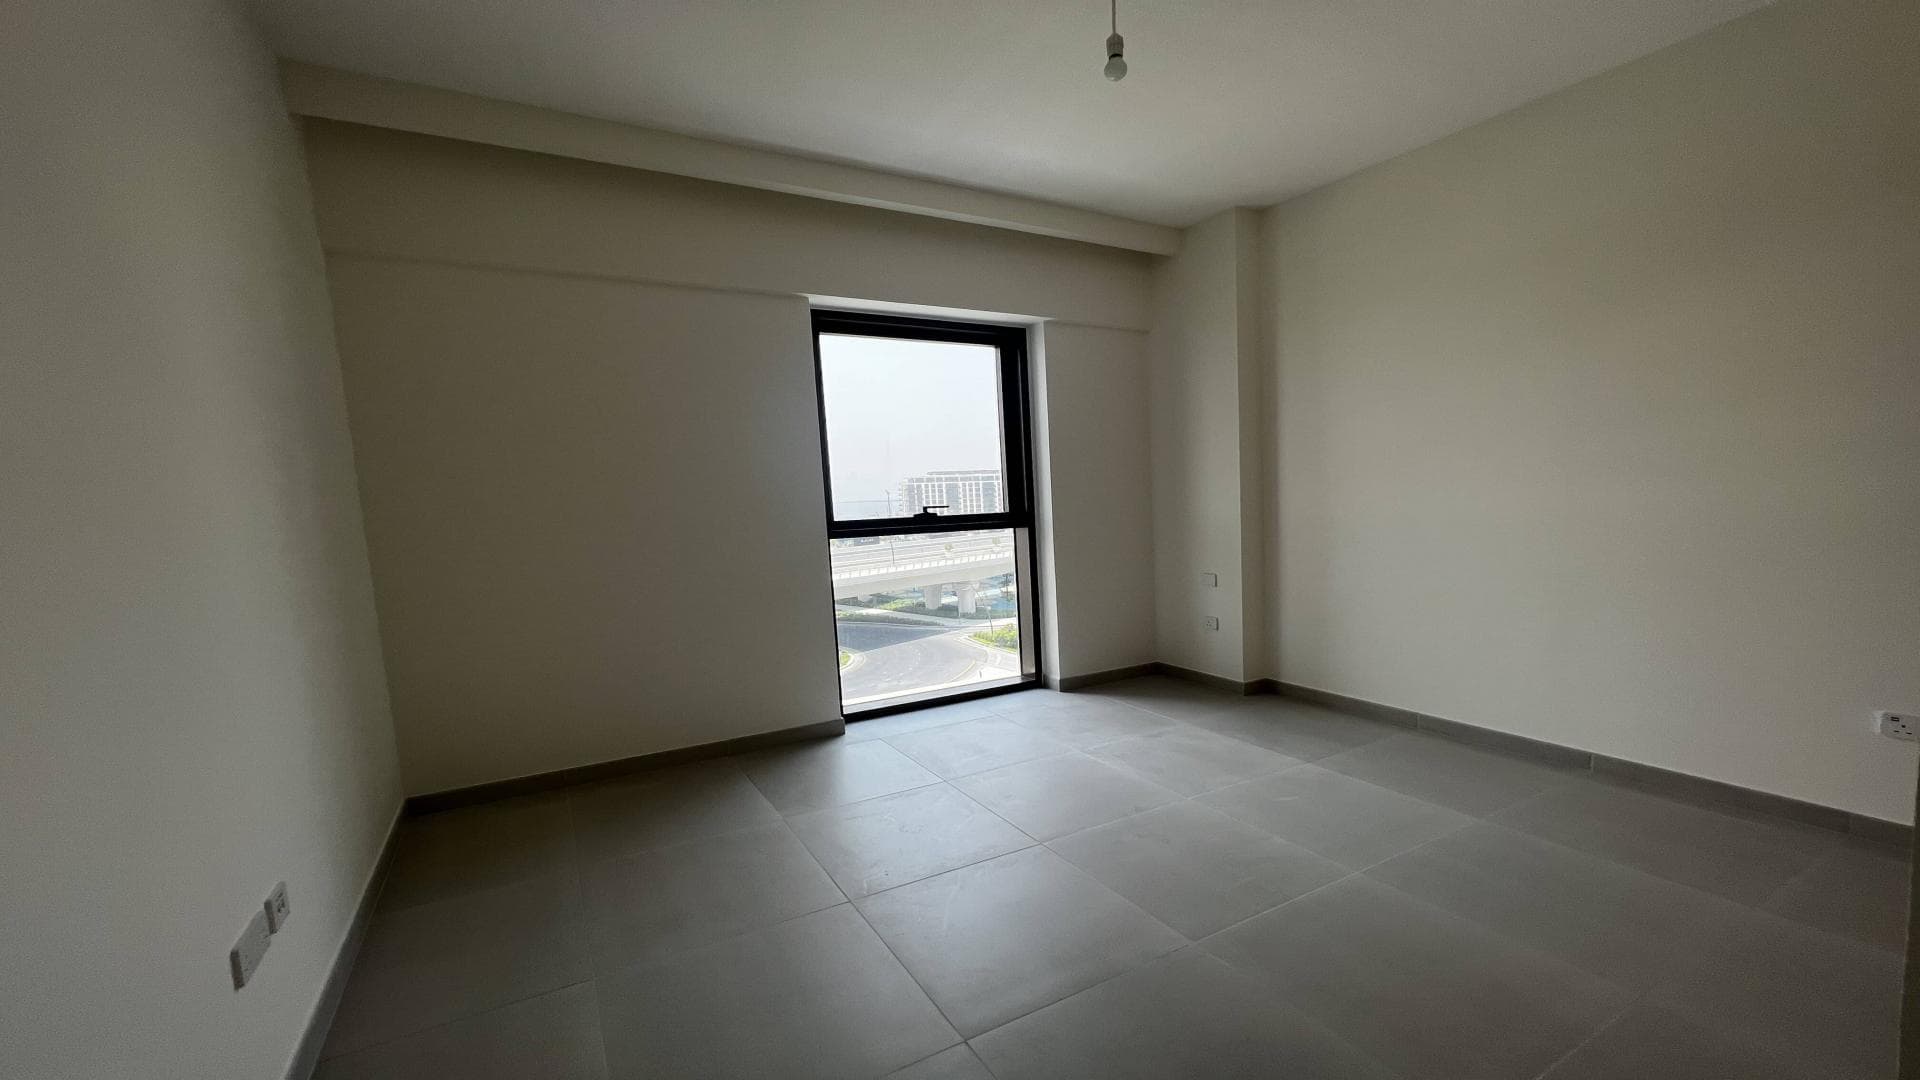 1 Bedroom Apartment For Rent Zahra Apartments 1a Lp21442 15a0fb27fff60700.jpg